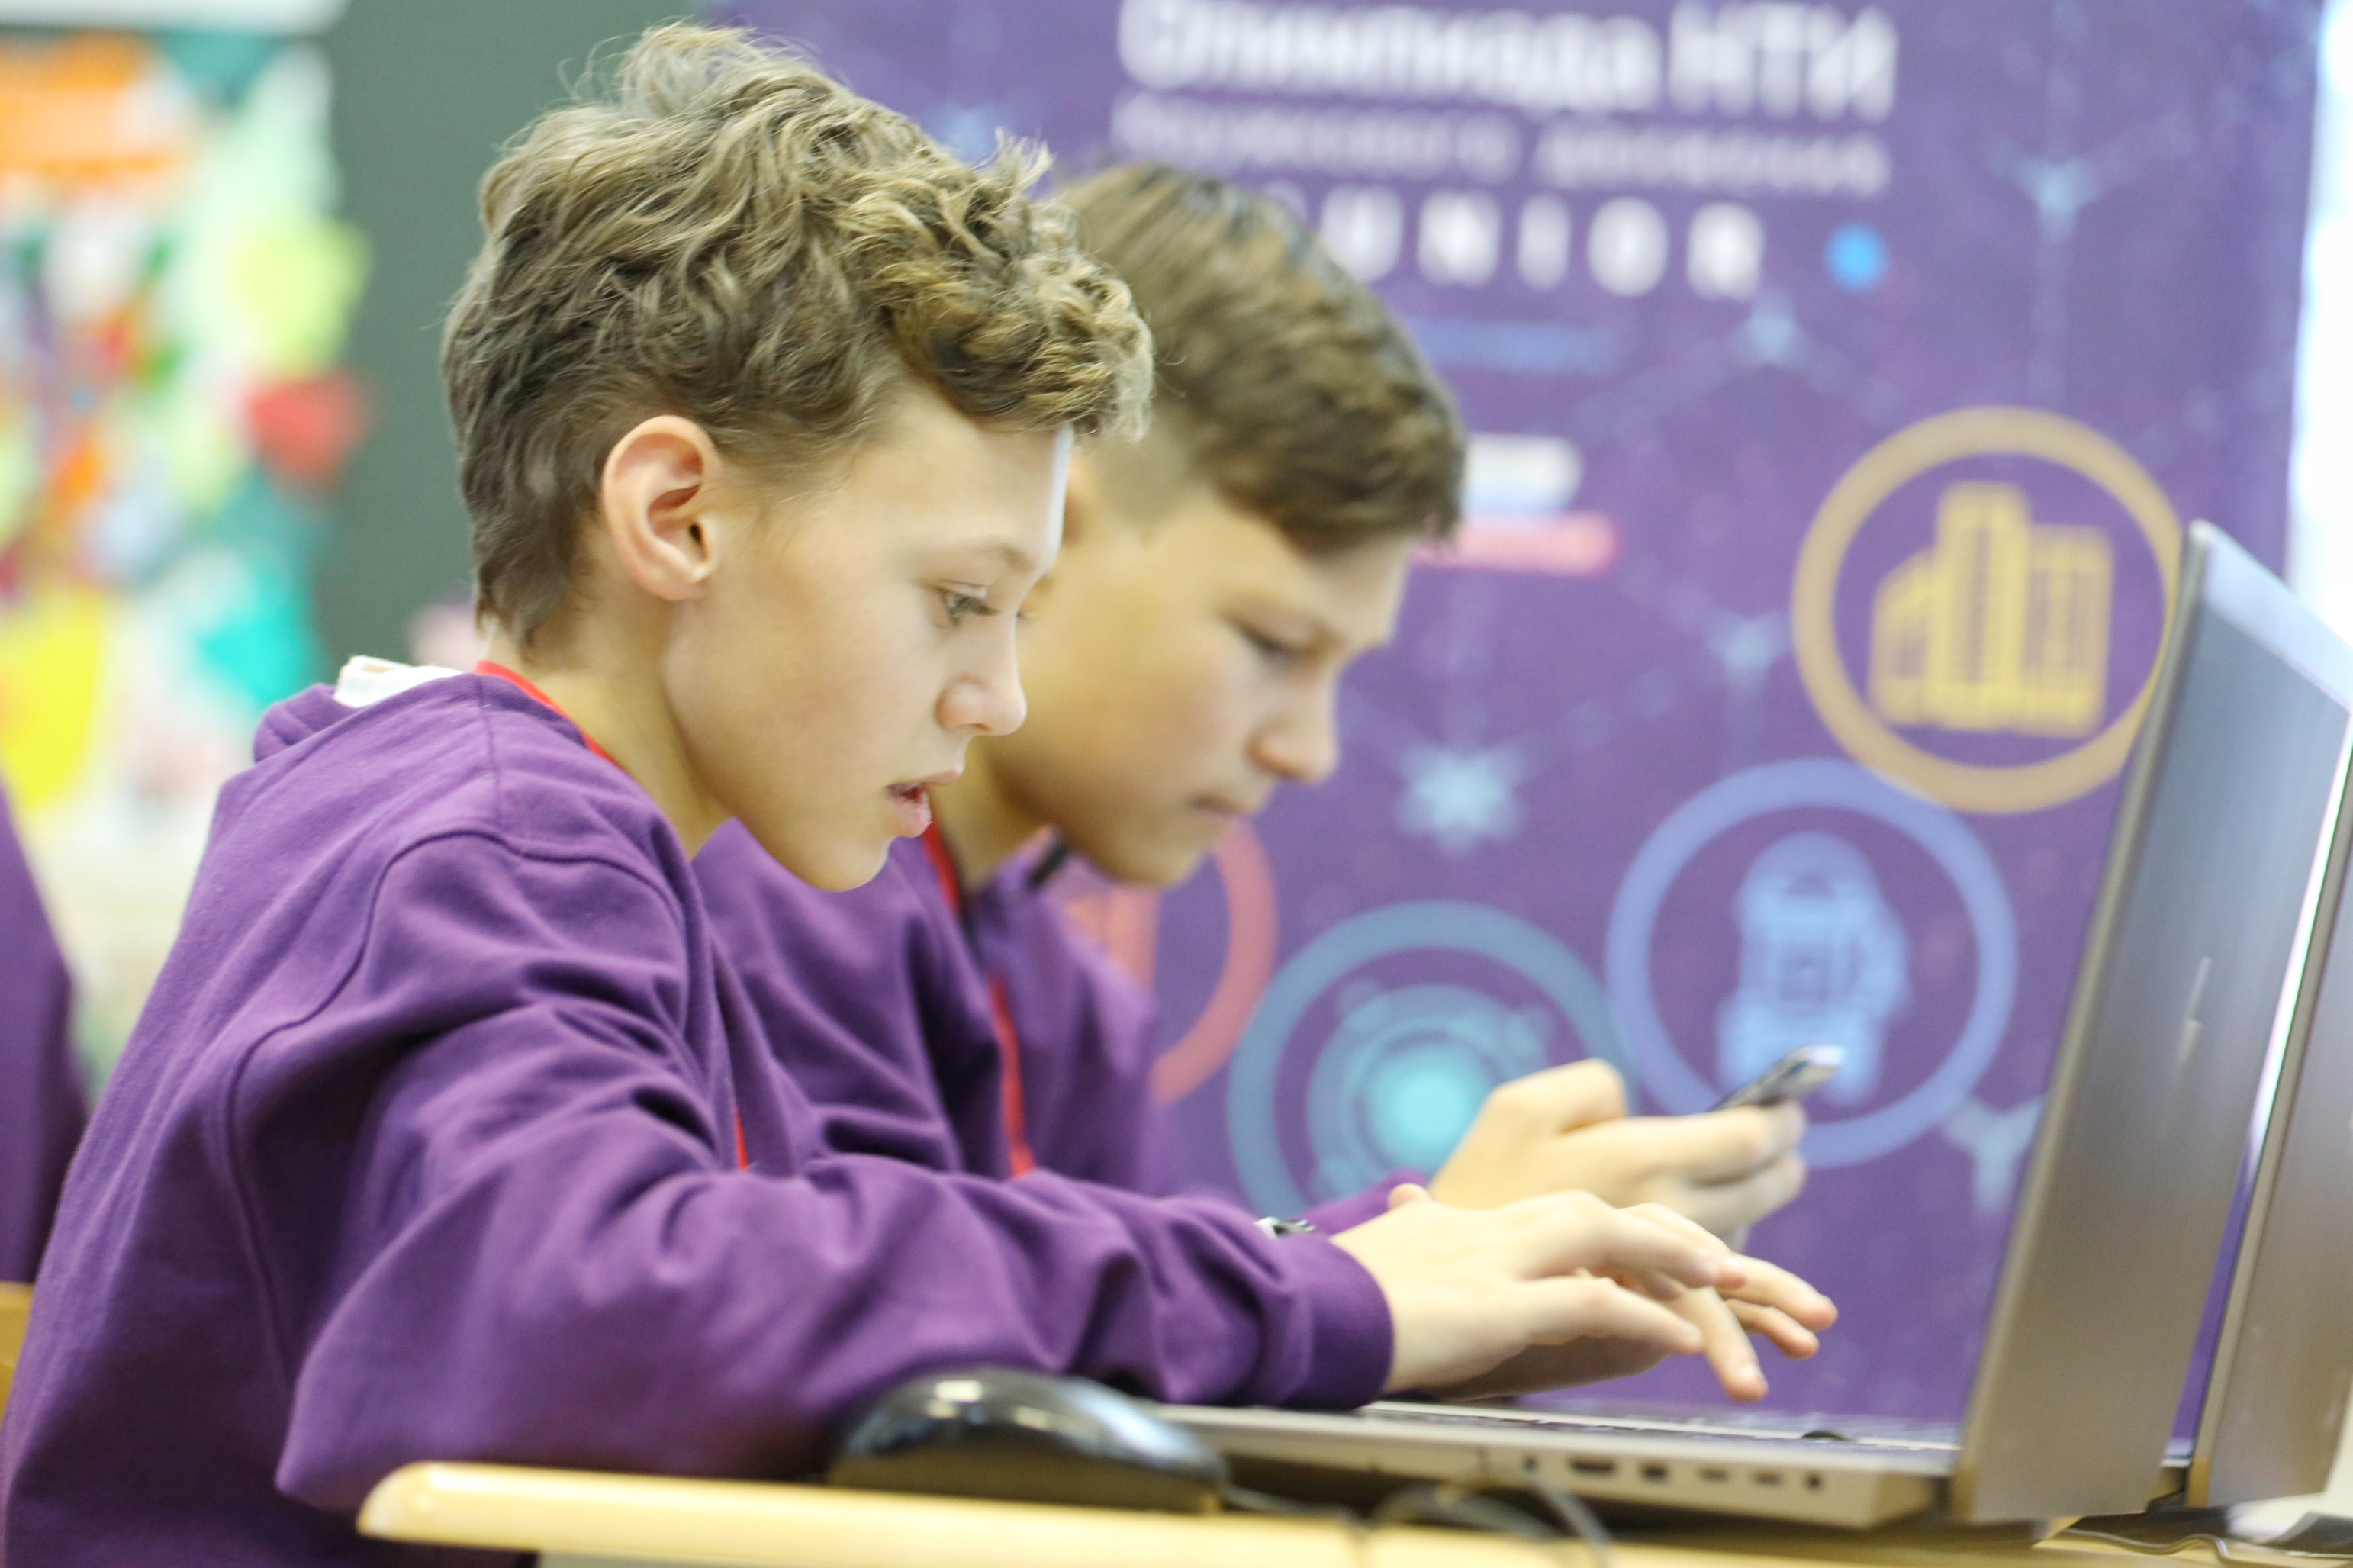 Технологии для Олимпиады Кружкового движения НТИ.Junior: открыт конкурс разработчиков направлений